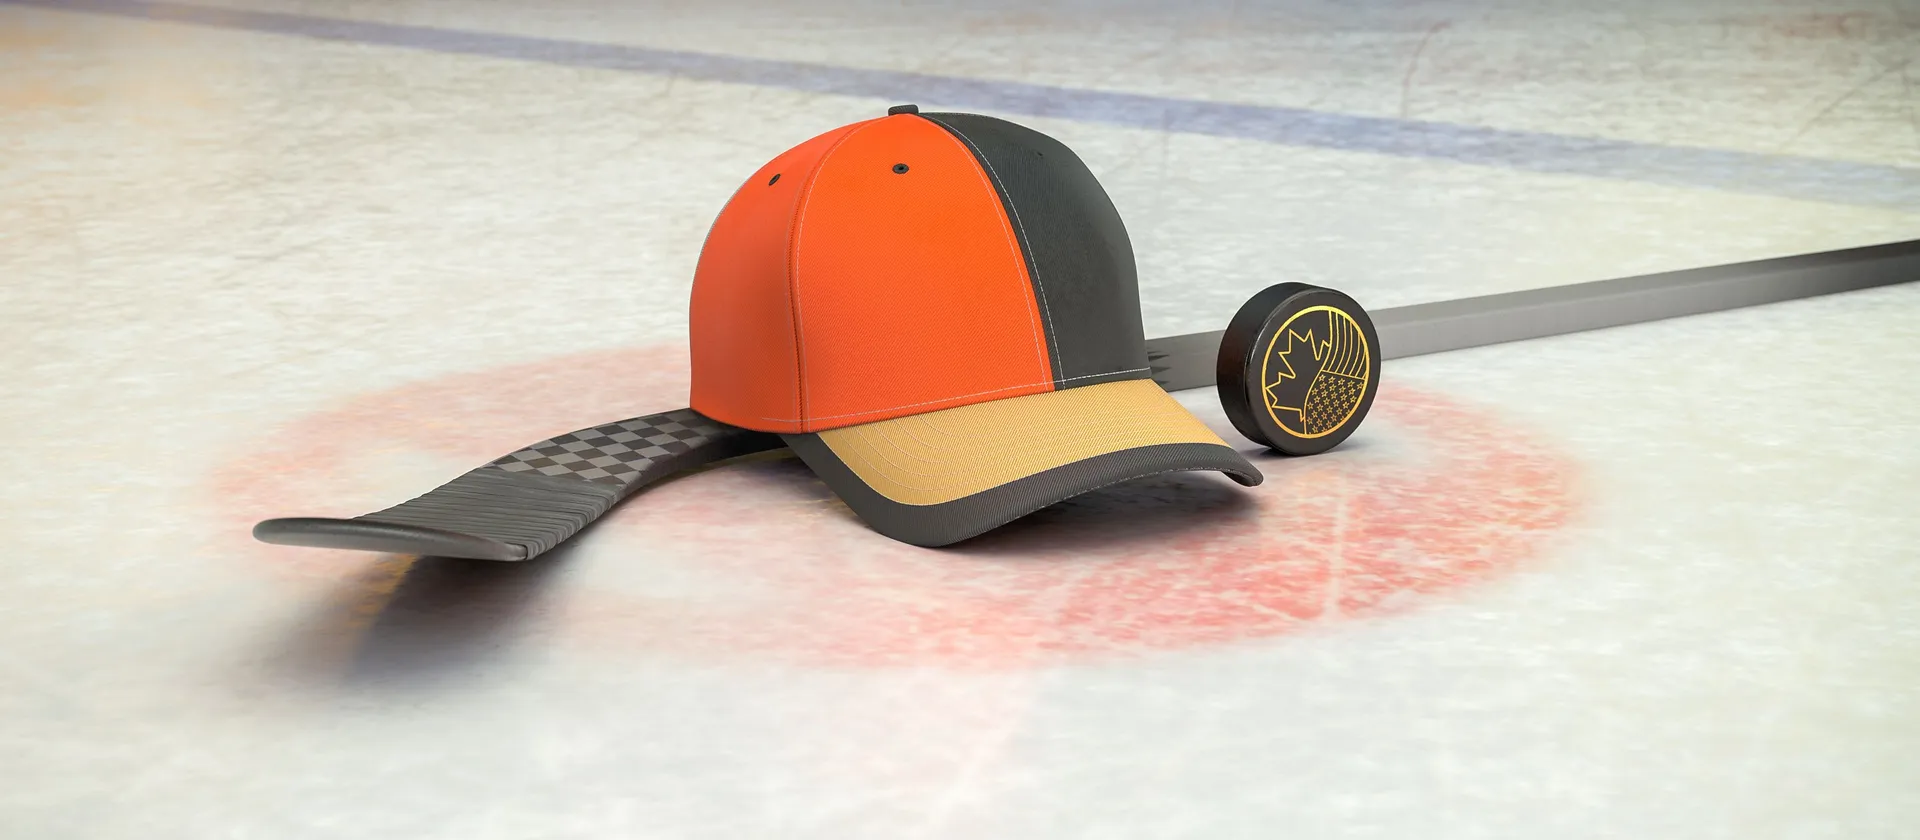 Bild på en hockeyklubba, puck och en supporterkeps med NHL-laget Anaheim Ducks färger